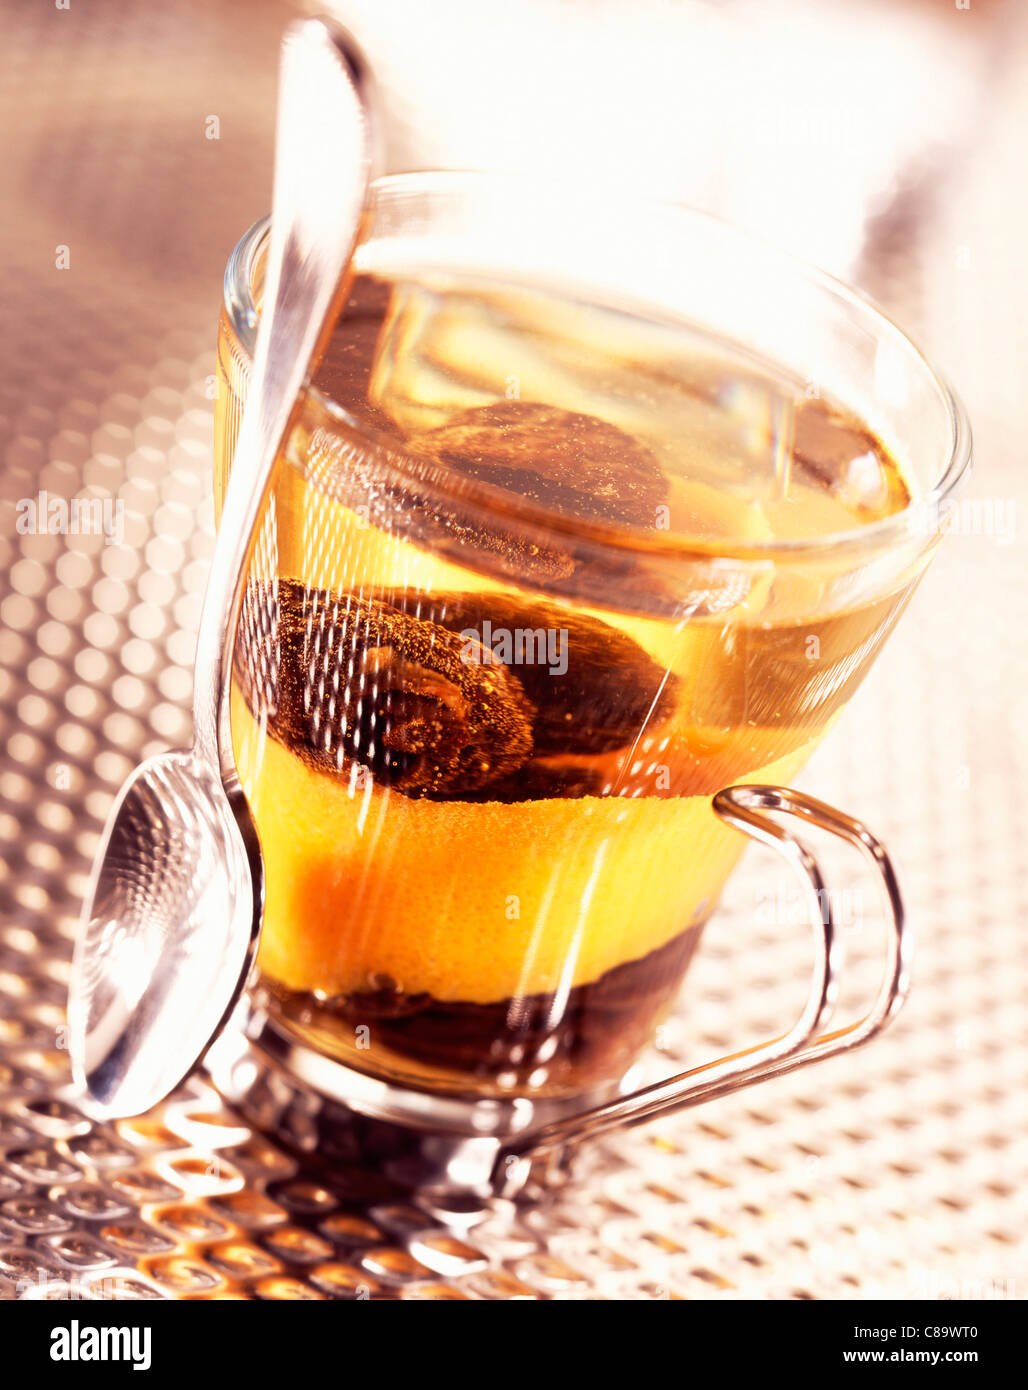 Le prugne secche in tè con la scorza di arancia Foto Stock